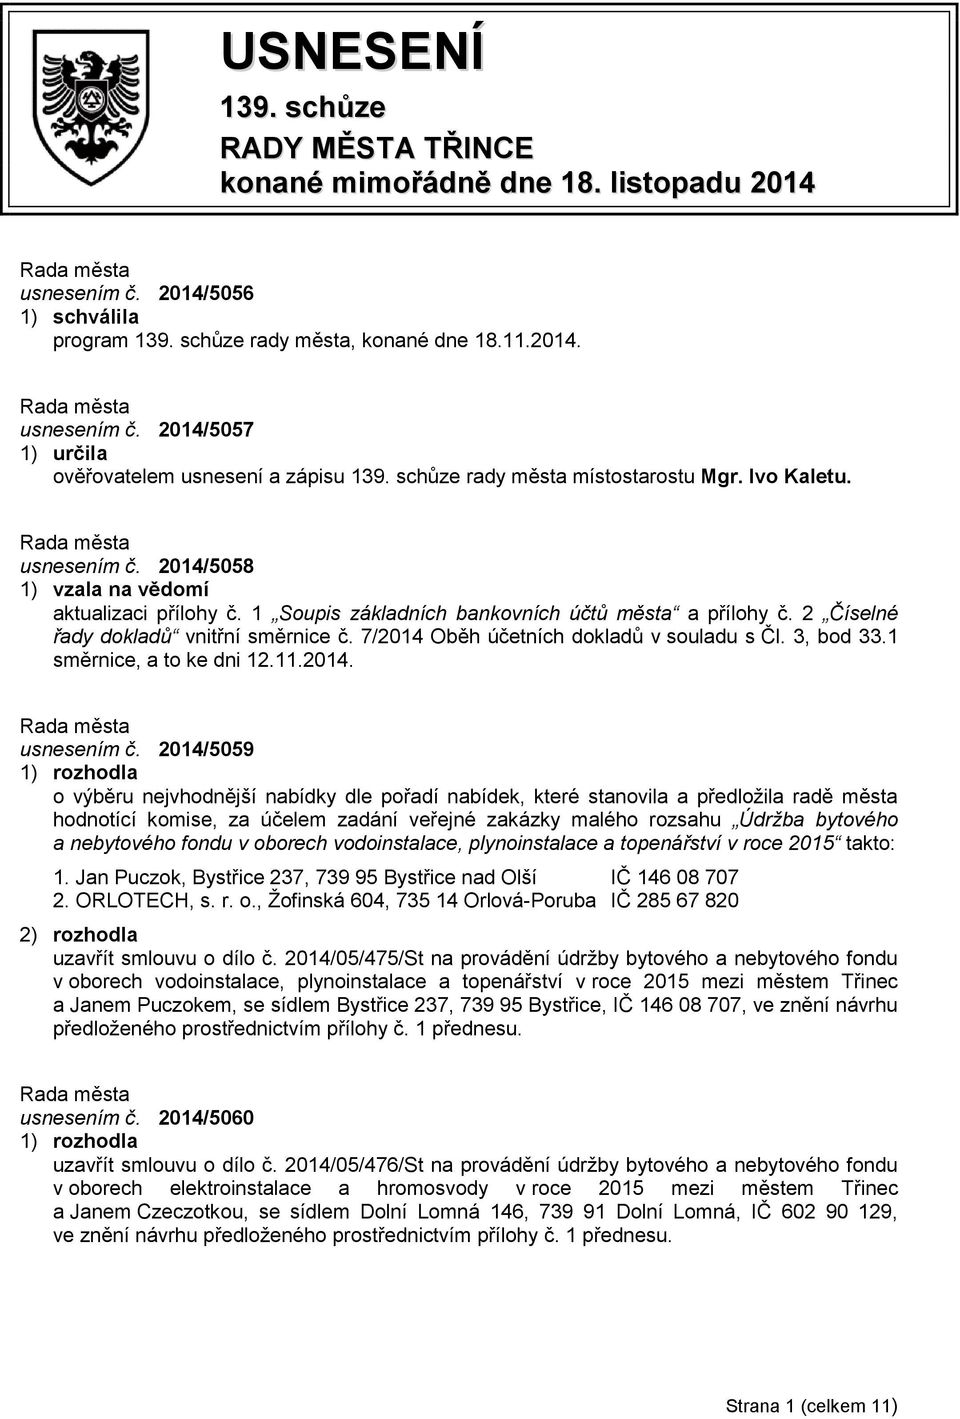 2 Číselné řady dokladů vnitřní směrnice č. 7/2014 Oběh účetních dokladů v souladu s Čl. 3, bod 33.1 směrnice, a to ke dni 12.11.2014. usnesením č.